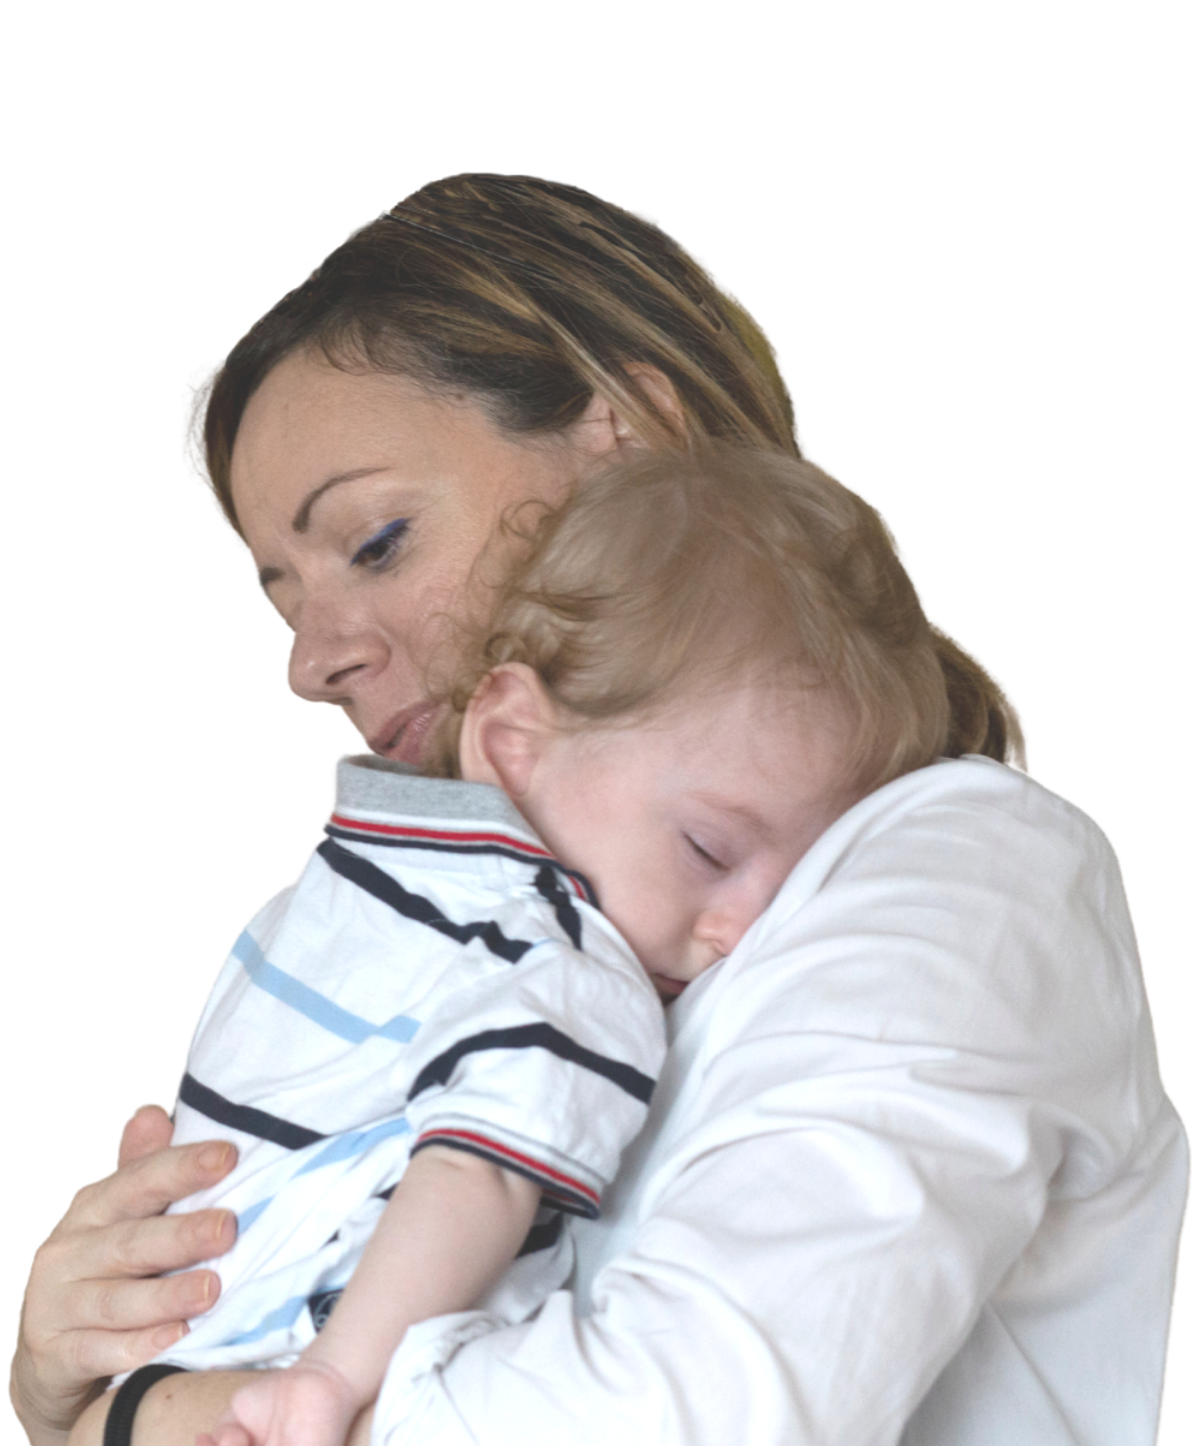 Il piccolo Gabriele, bambino utente del Centro di Osimo, dorme in braccio alla mamma